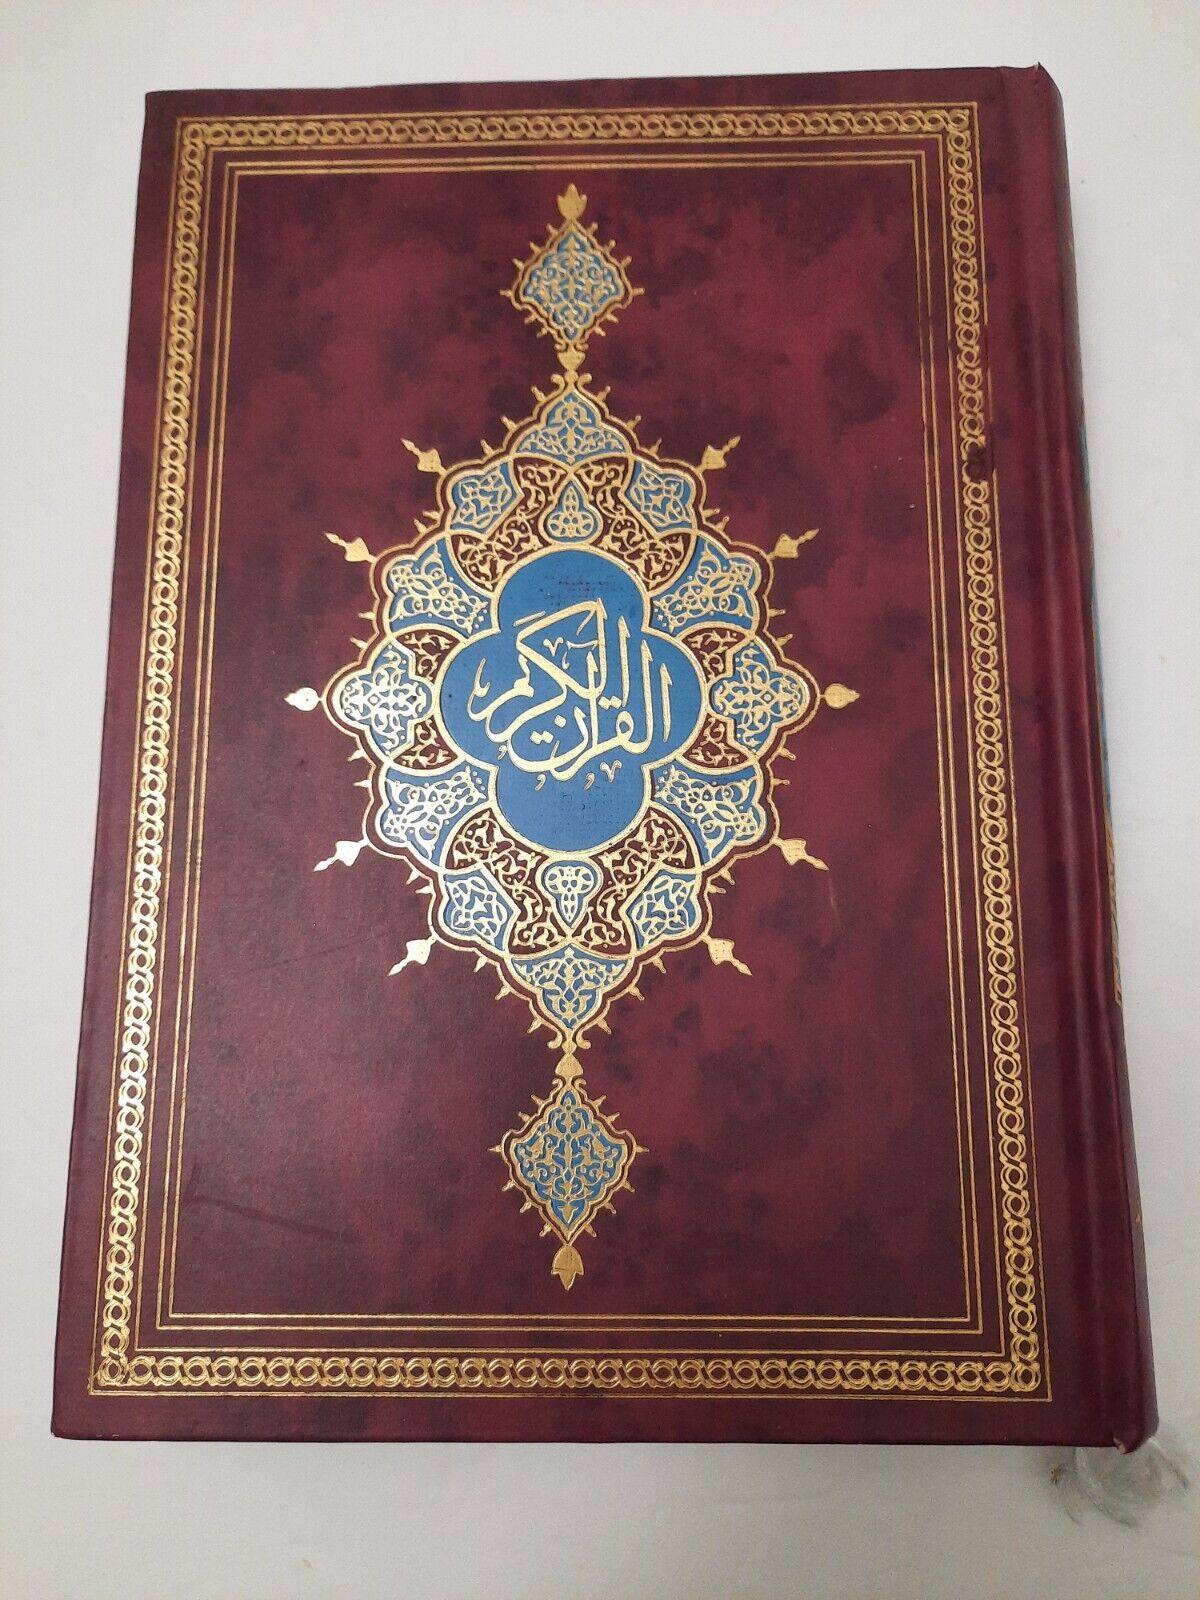 Quran Arabic Holy Book Hardcover Qur'an Koran Scripture Arabic Text Islamic 